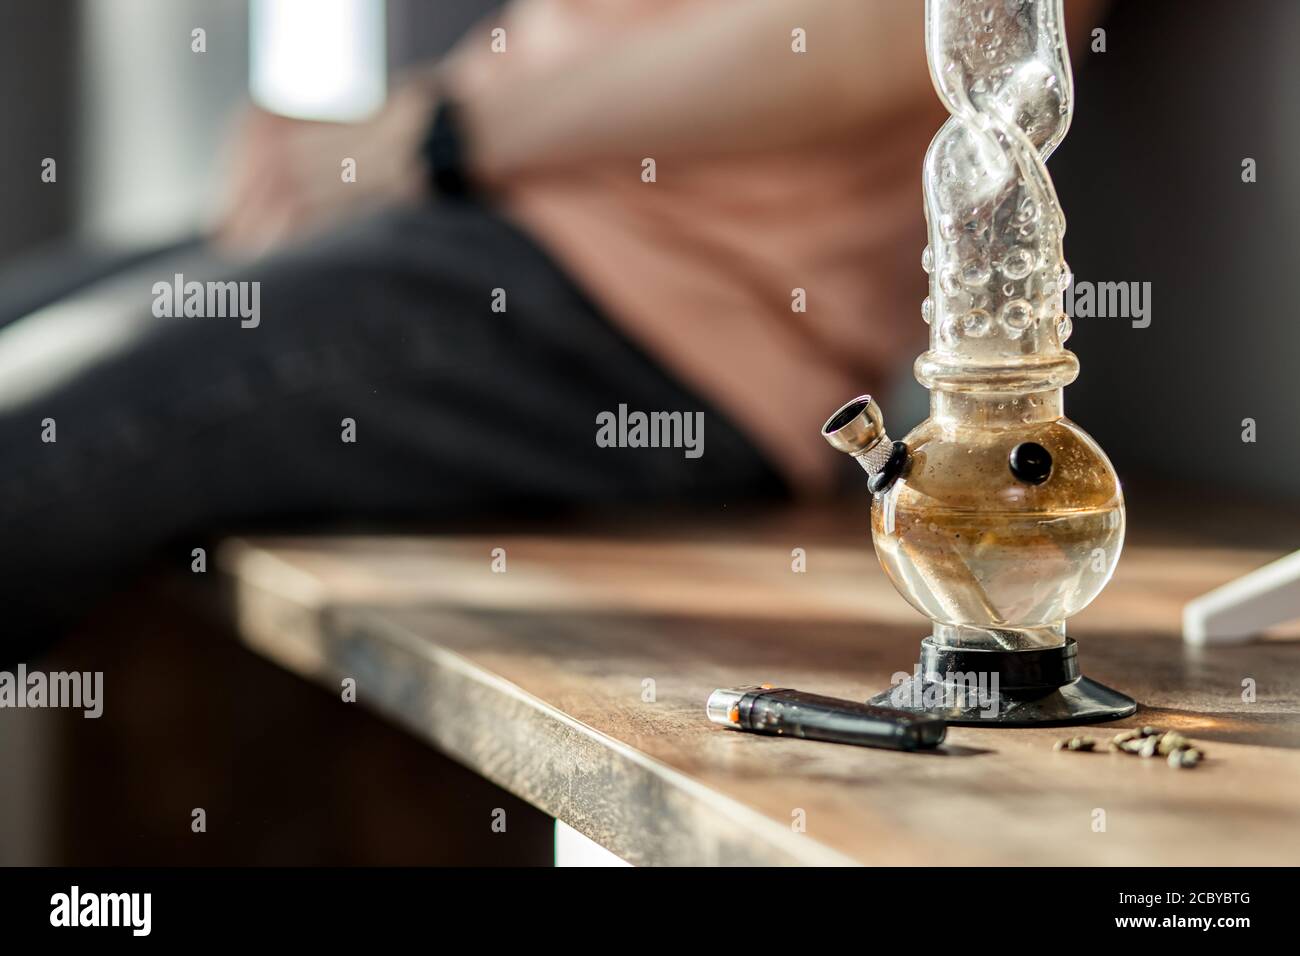 primo piano di bottiglia di bong con marijuana, accendino e medicina della canapa sul tavolo. tossicodipendenza, ganja, concetto narcotico Foto Stock